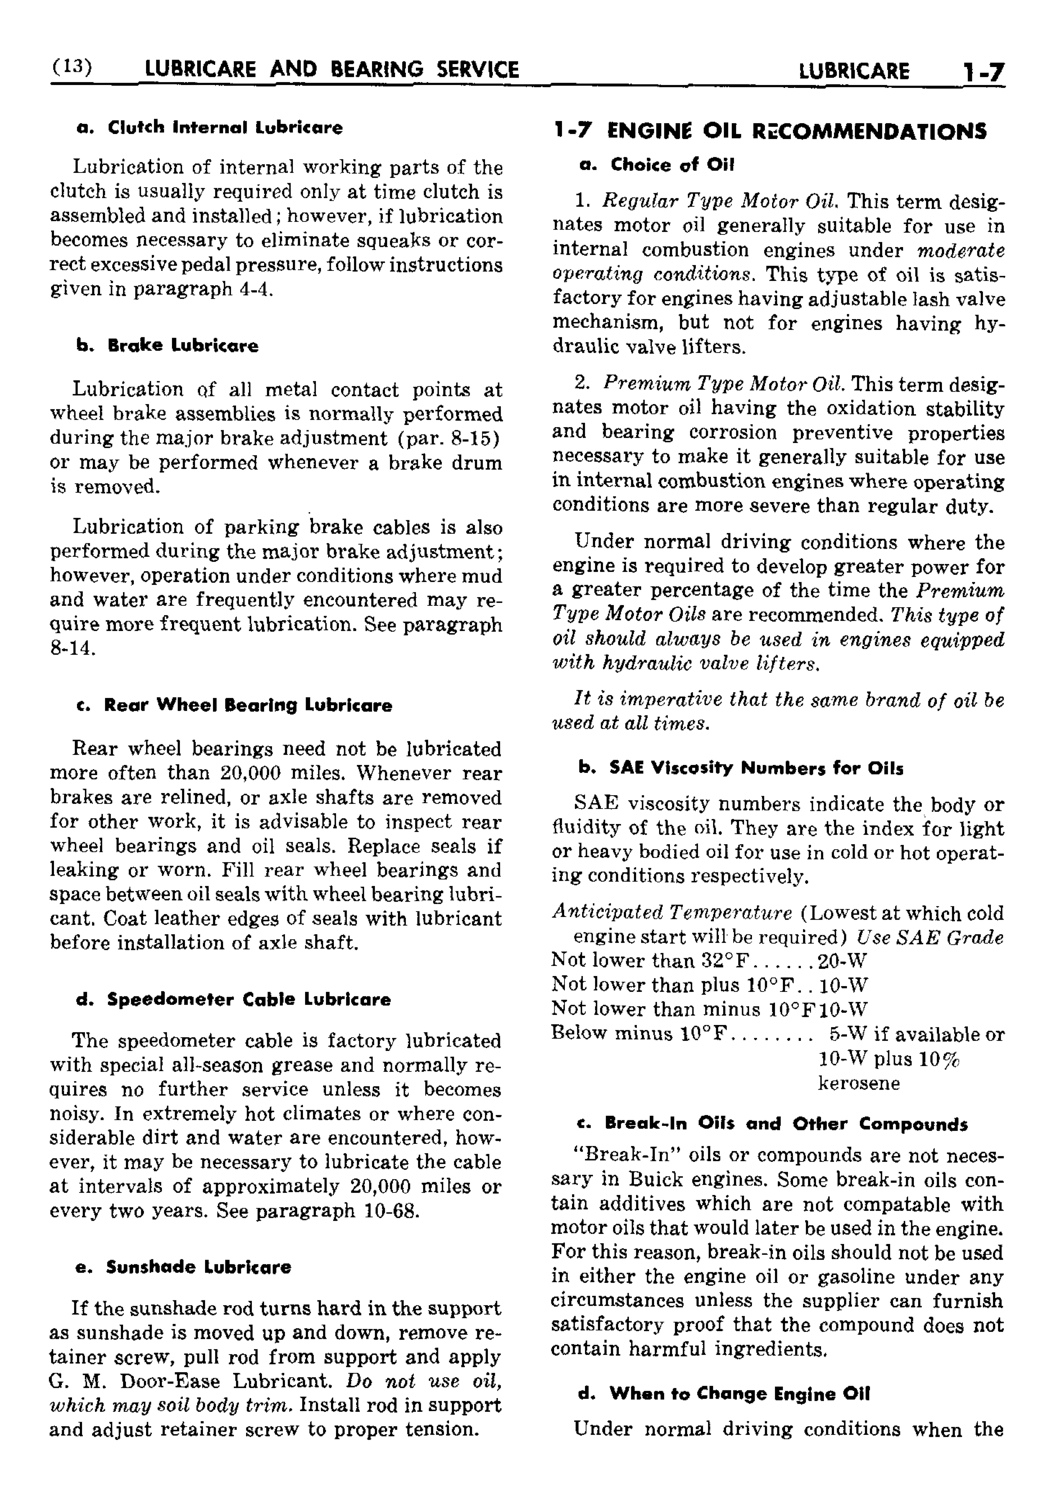 n_02 1950 Buick Shop Manual - Lubricare-007-007.jpg